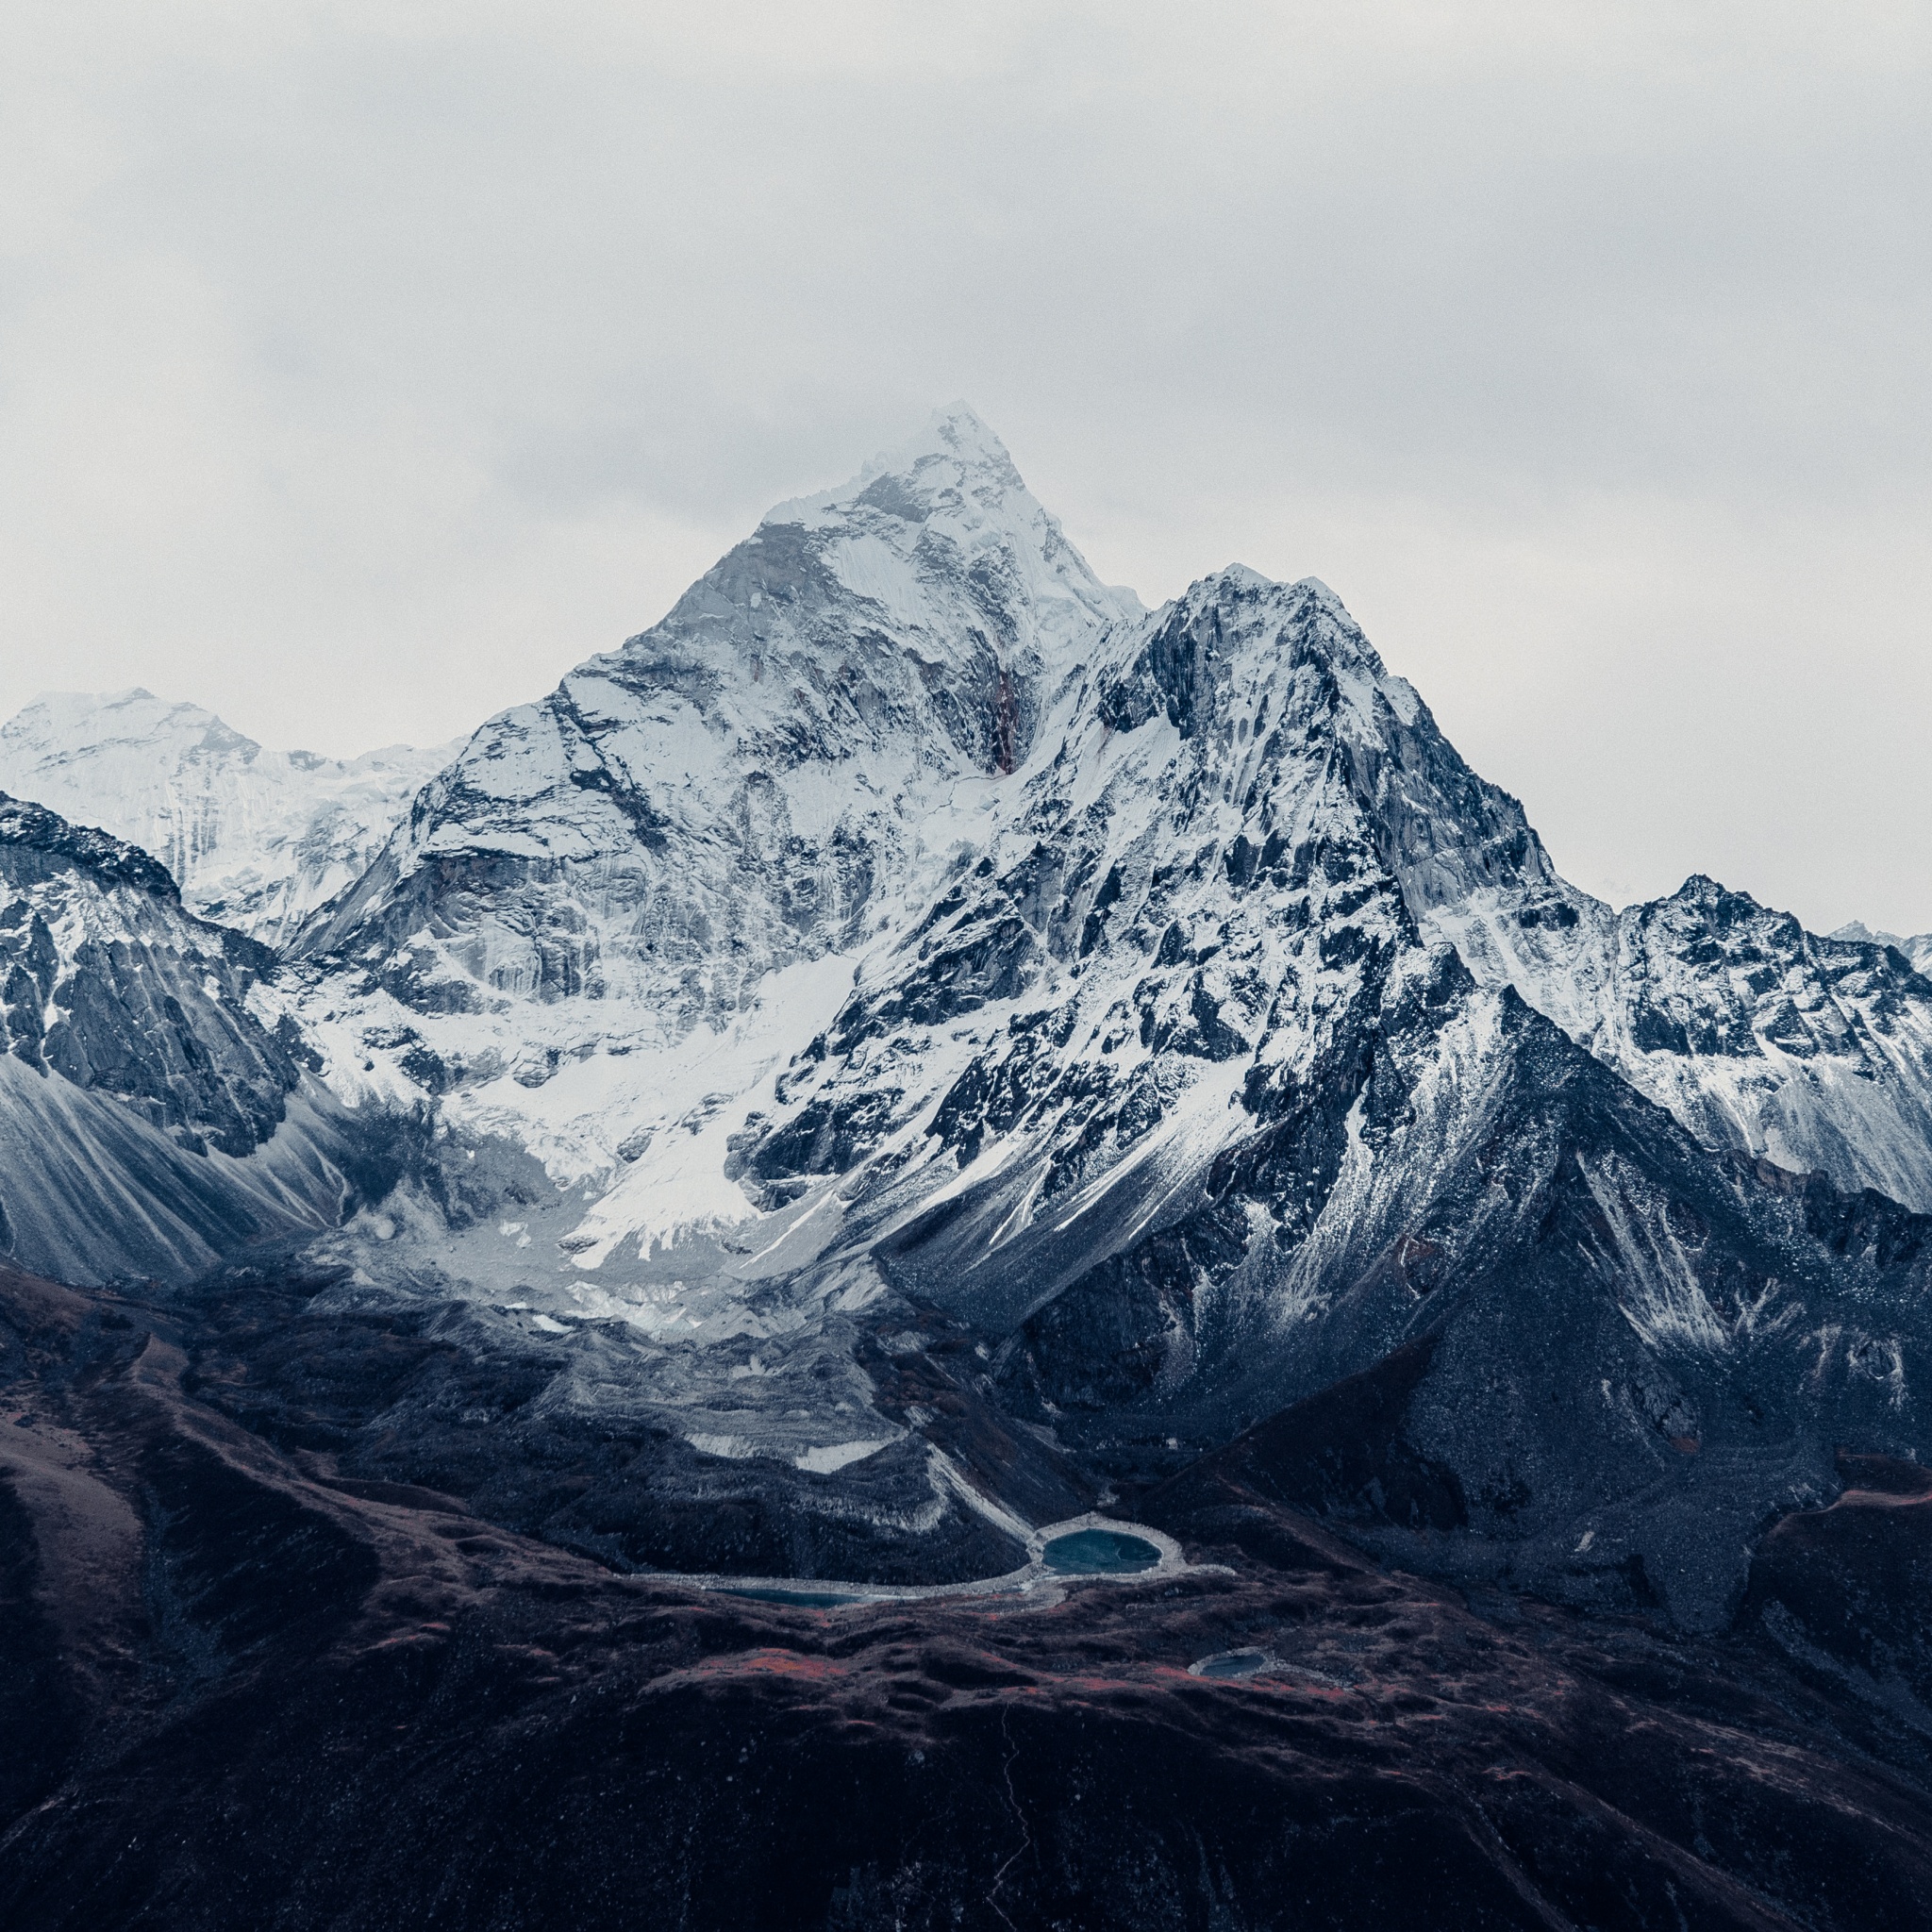 Mount Everest Wallpaper 4K, Mountain Peak, Himalayas, Nepal